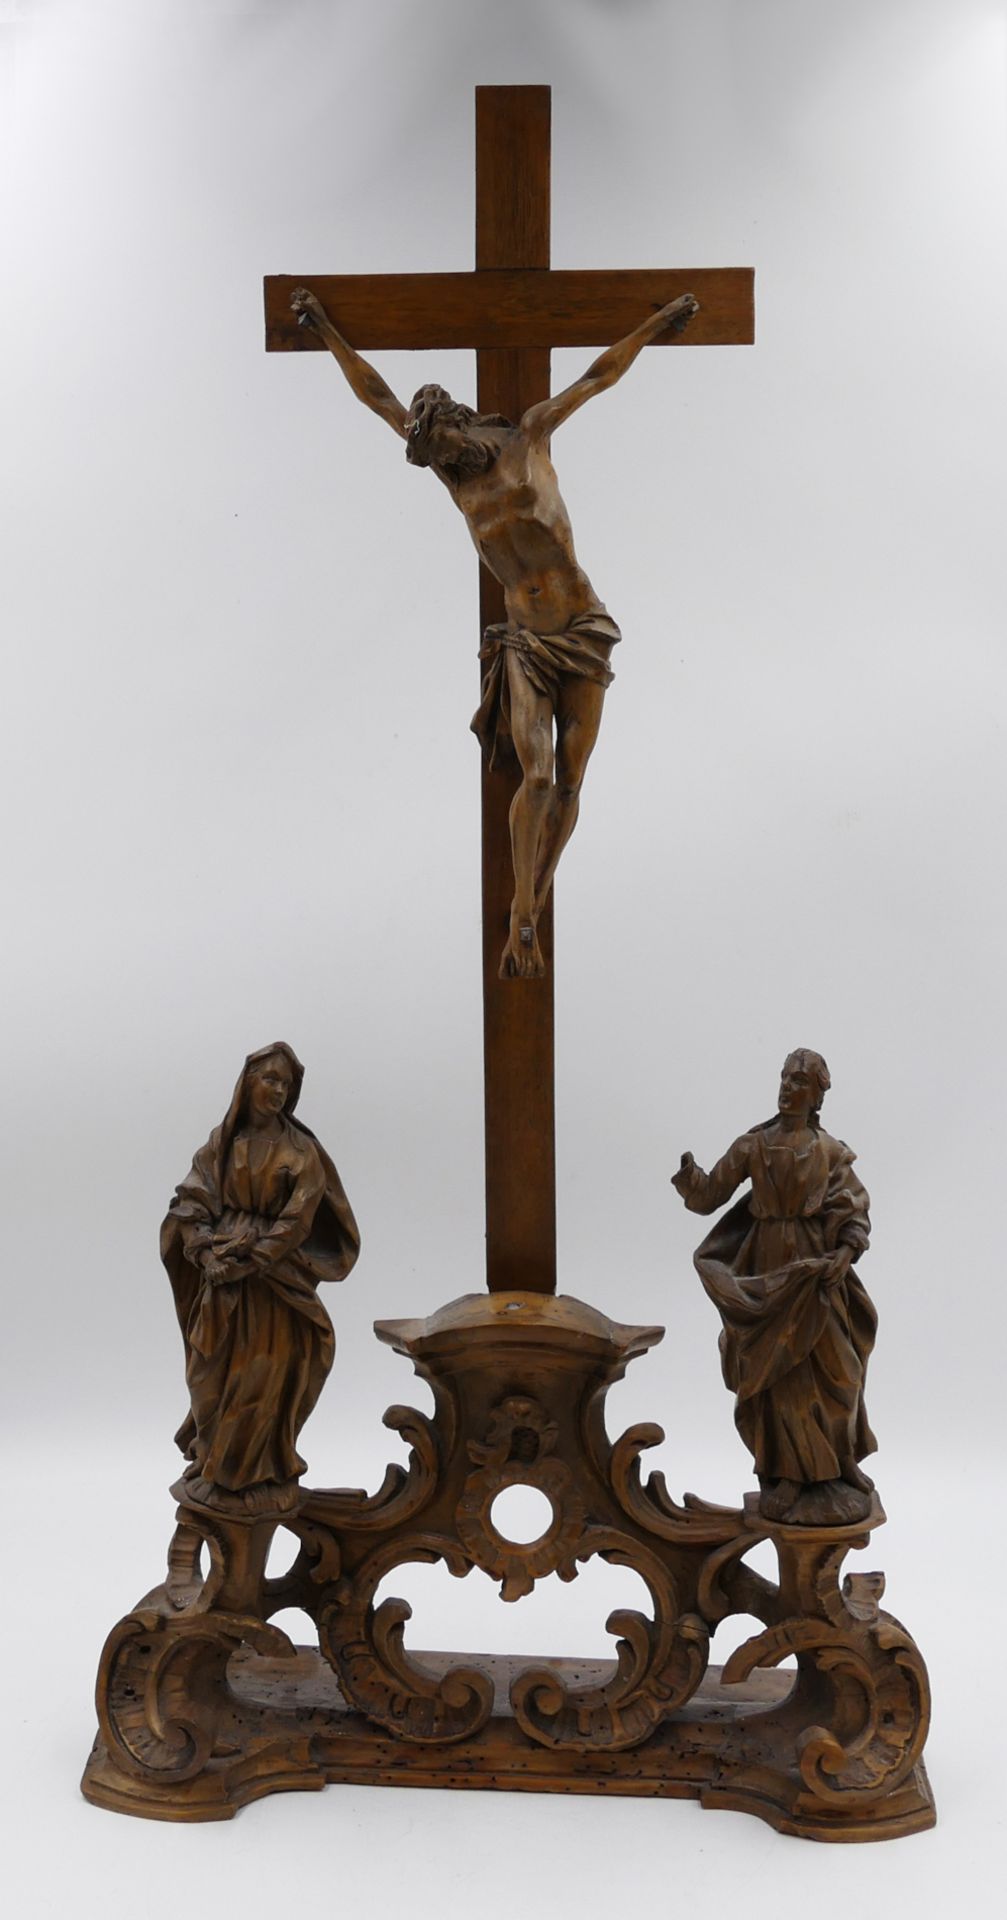 1 Kreuzigungsgruppe wohl 18. Jh. Holz, z.T. wohl ergänzt/erneuert, ca. H 67cm,